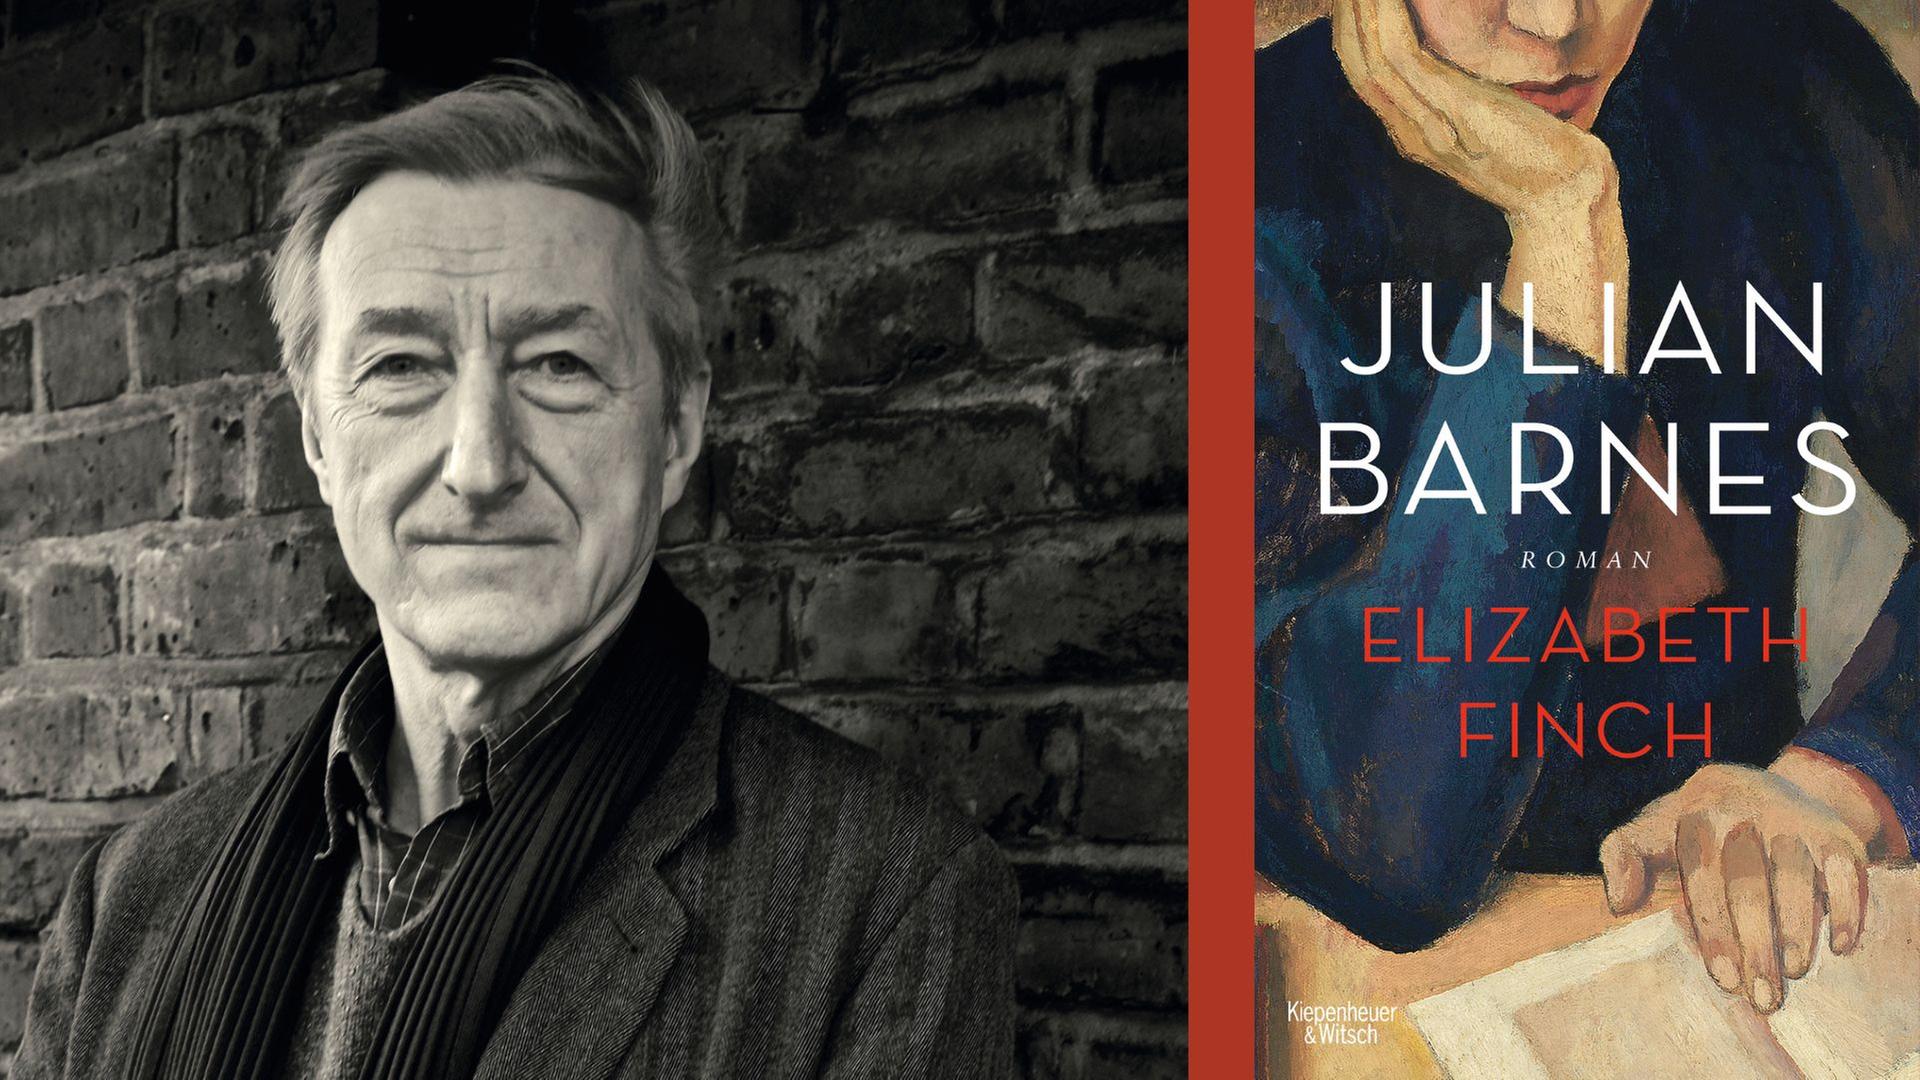 Julian Barnes: "Elizabeth Finch"
Zu sehen sind der Autor und das Buchcover